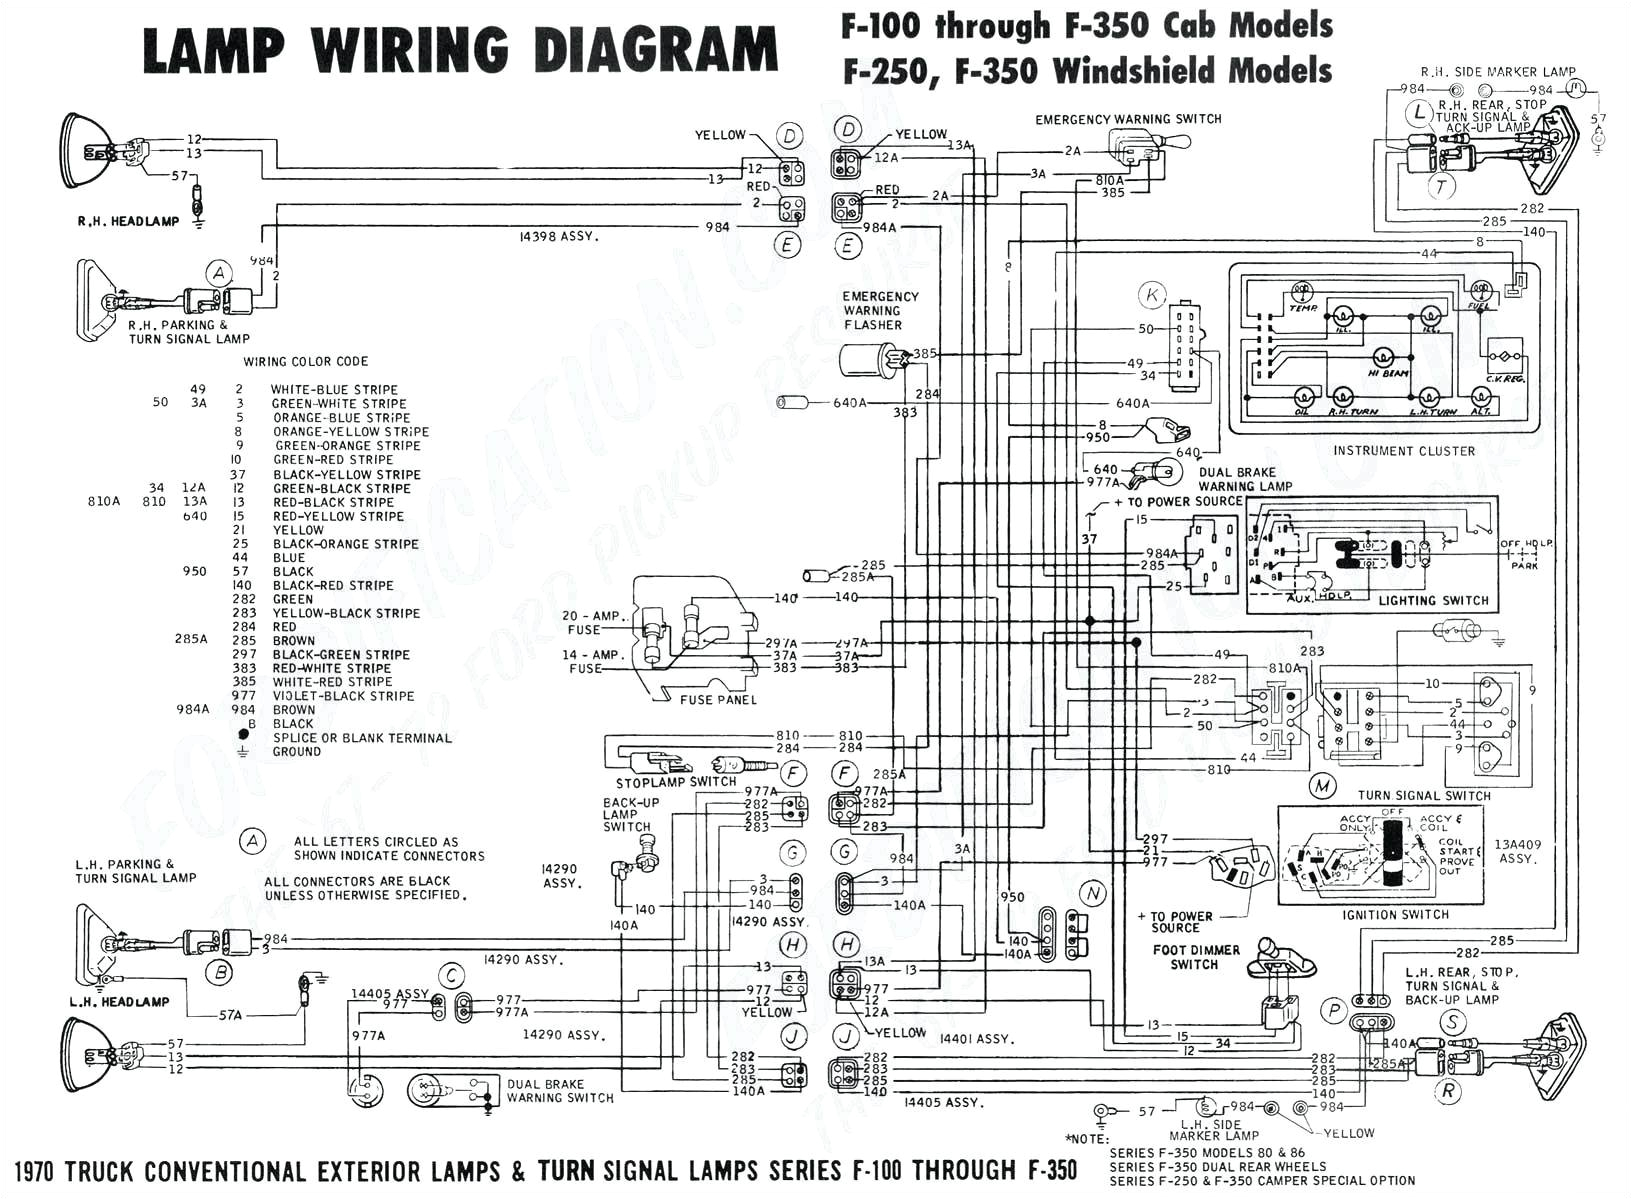 1987 mazda wiring hot blog wiring diagram 1987 mazda wiring hot